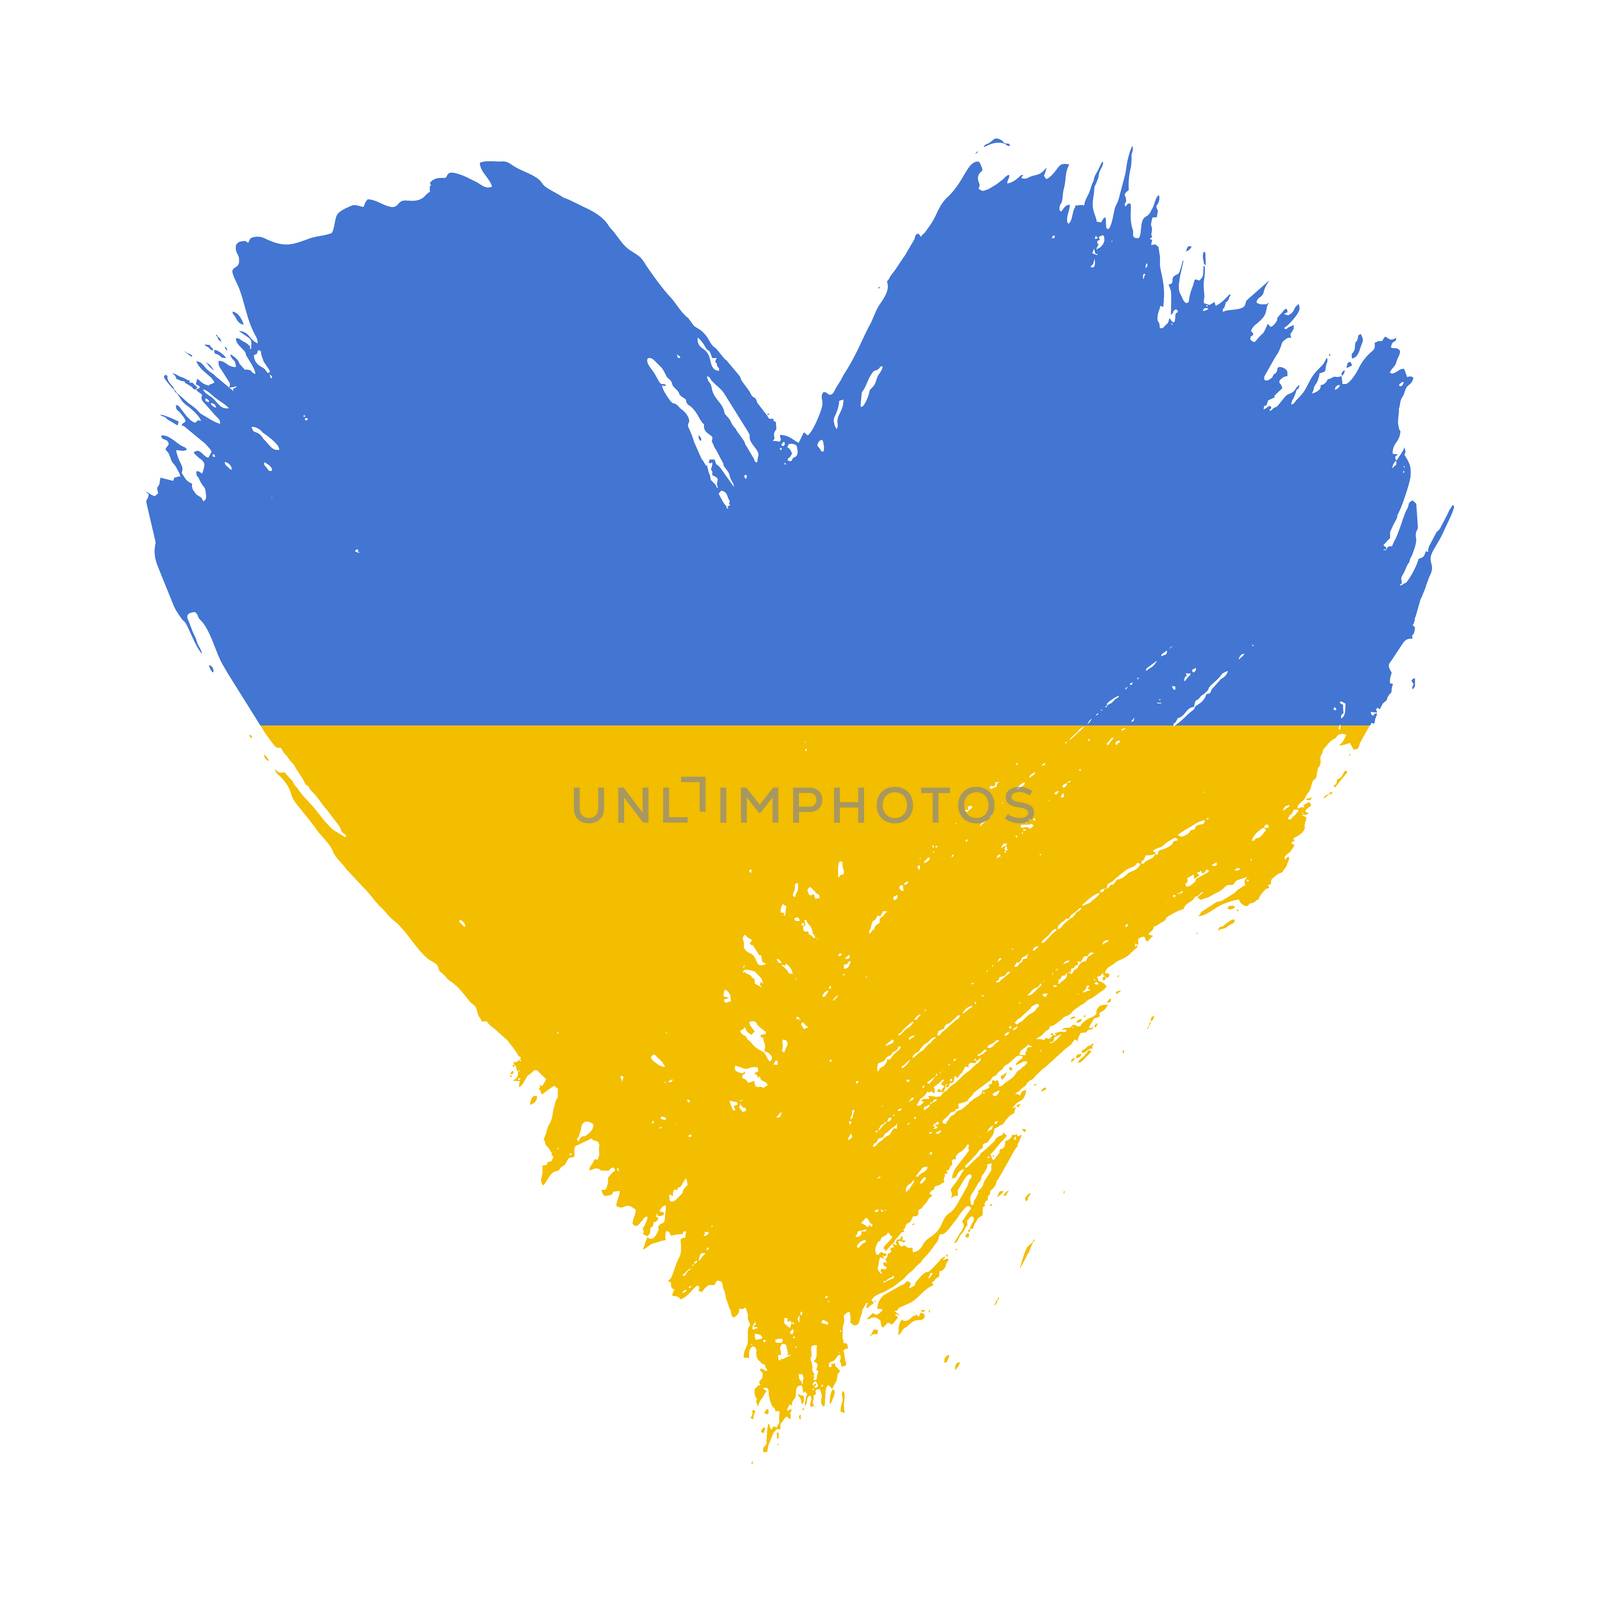 Grunge brushstroke painted illustration of heart shaped distressed Ukrainian flag isolated on white background